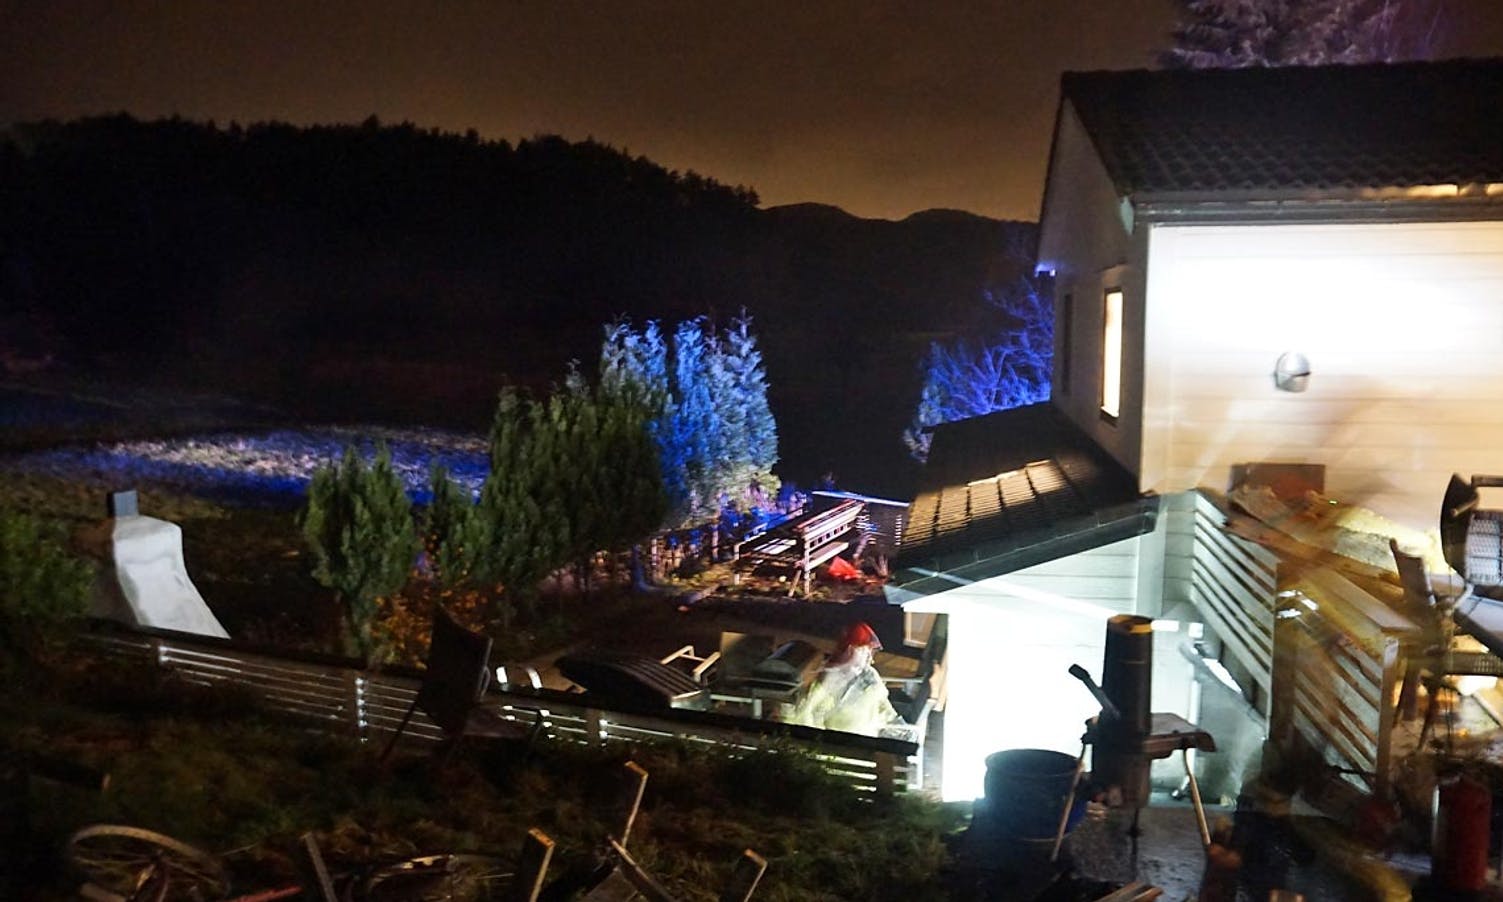 Huseigar mistenker at glør frå utepeisen til venstre har blåst inn under terrassen. (Foto: KVB)